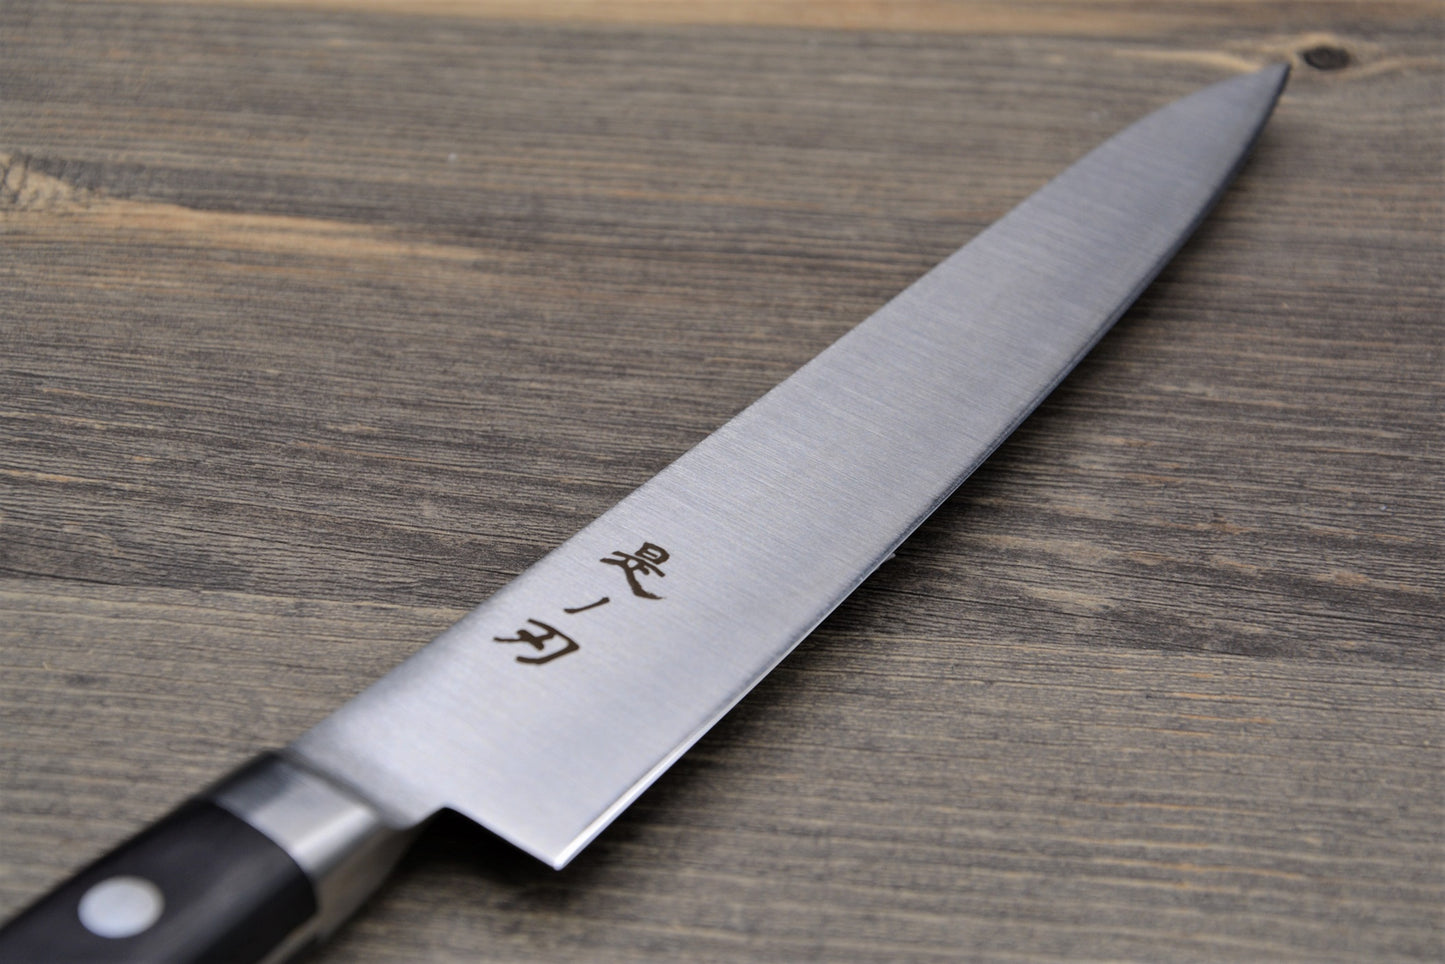 Konoha basic petty knife 150mm